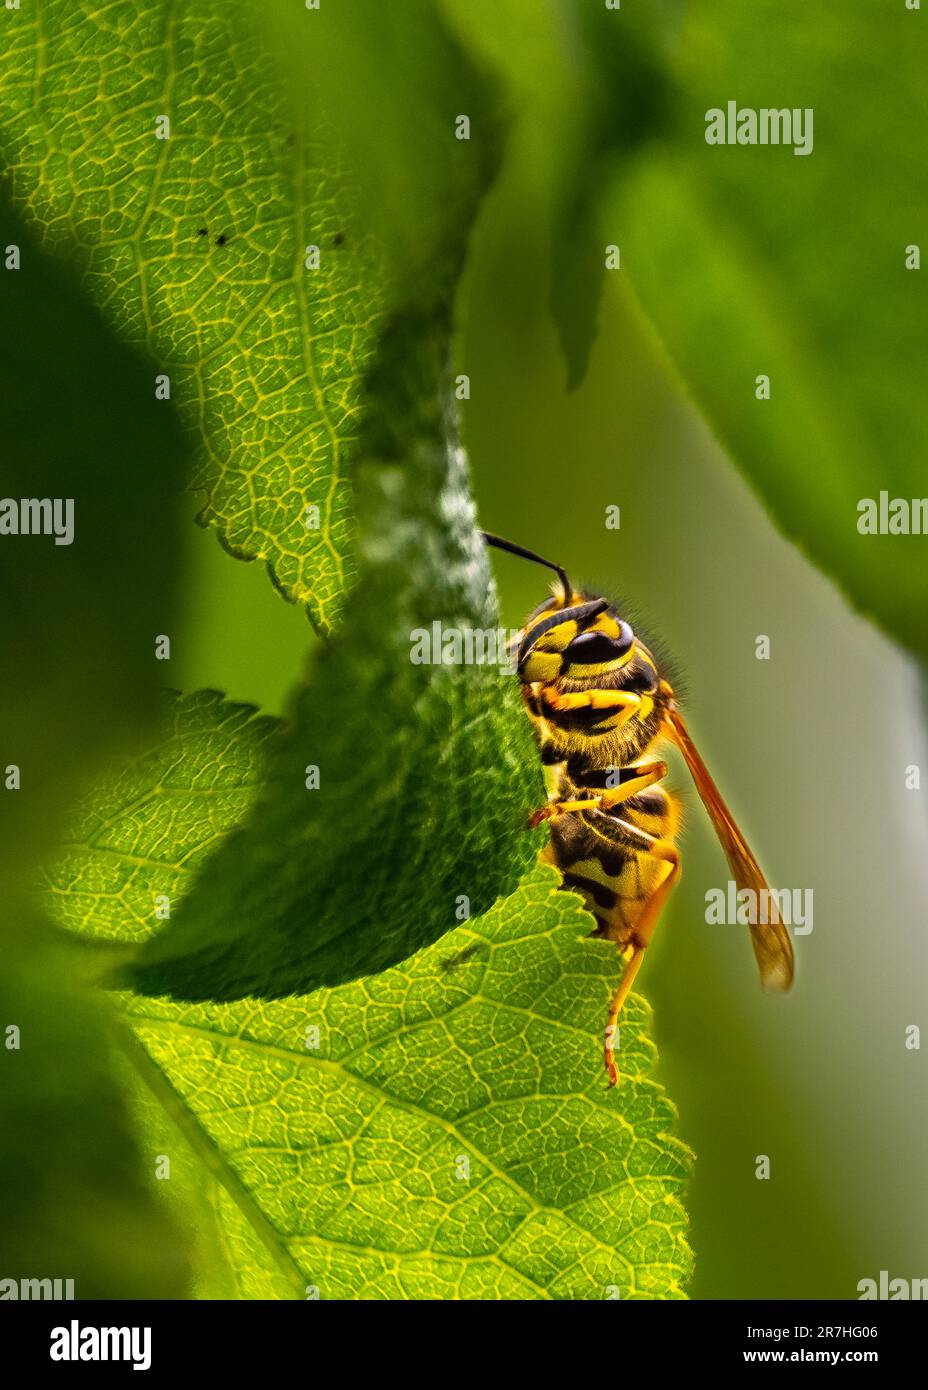 Veleno di vespe immagini e fotografie stock ad alta risoluzione - Alamy